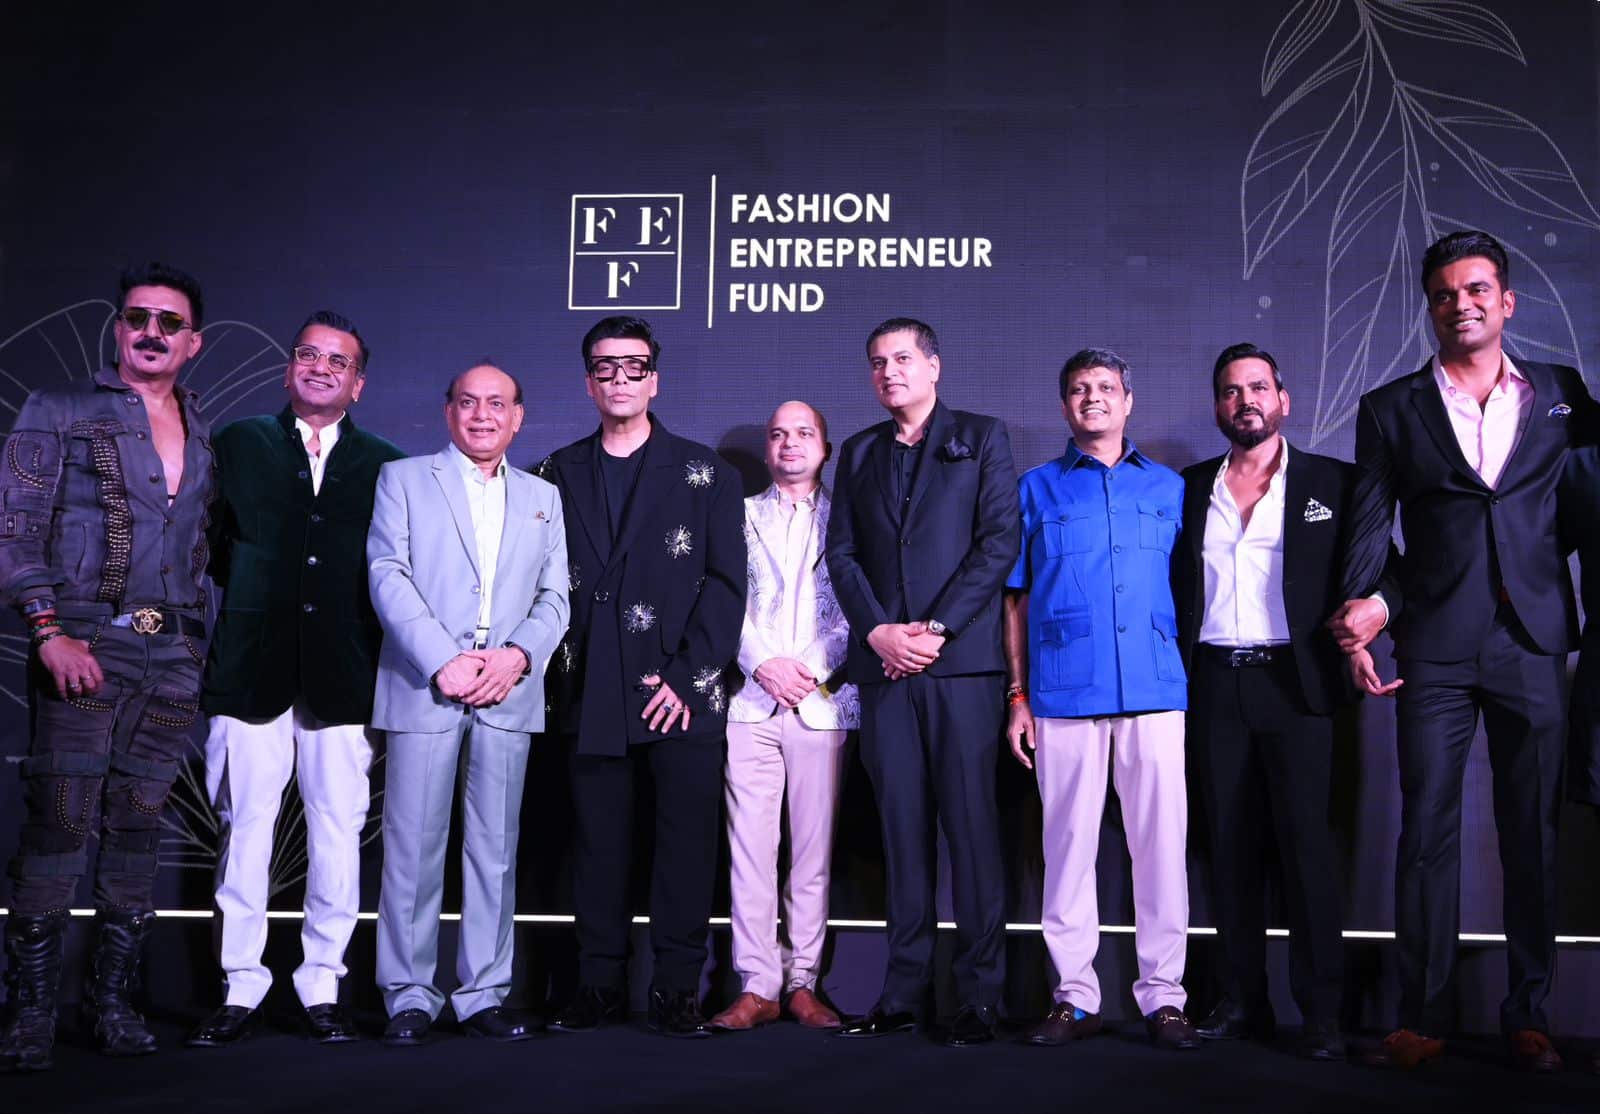 The Fashion Entrepreneur Fund (FEF)